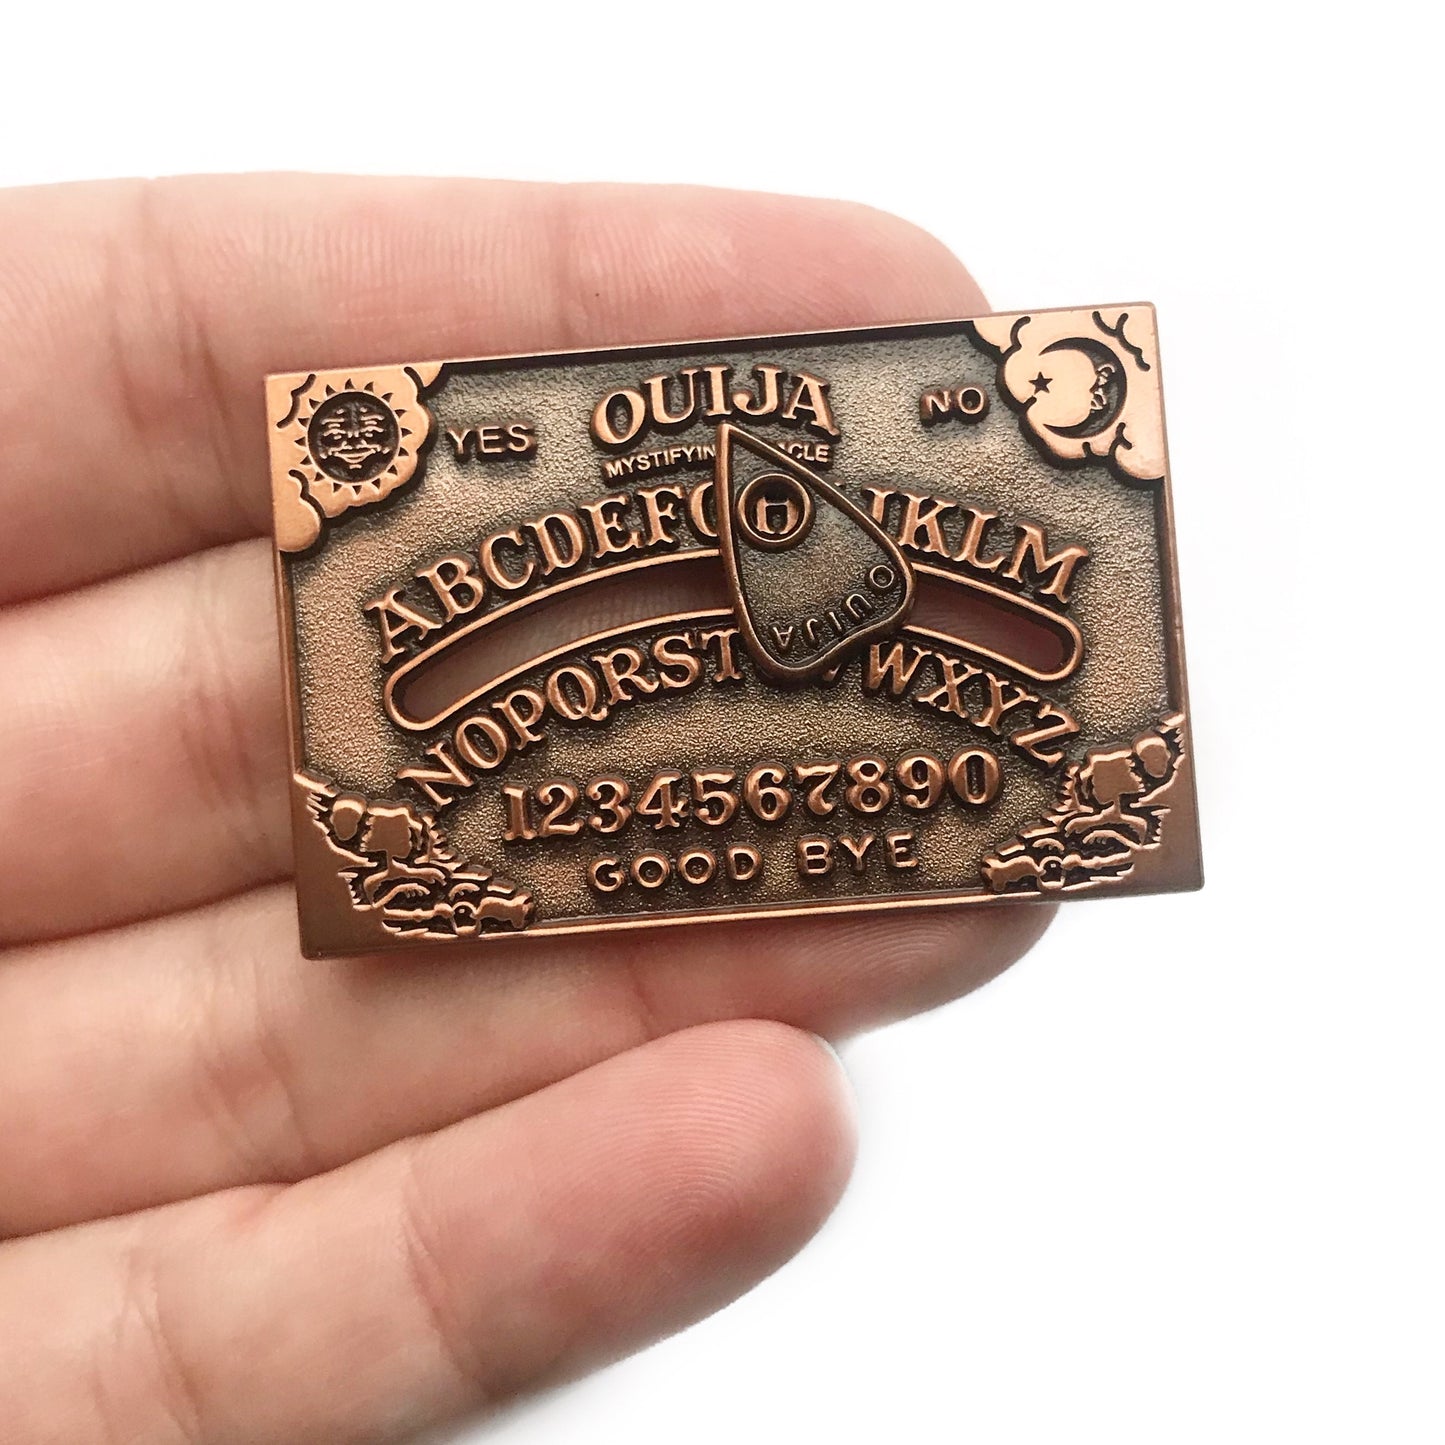 Copper Ouija Pin